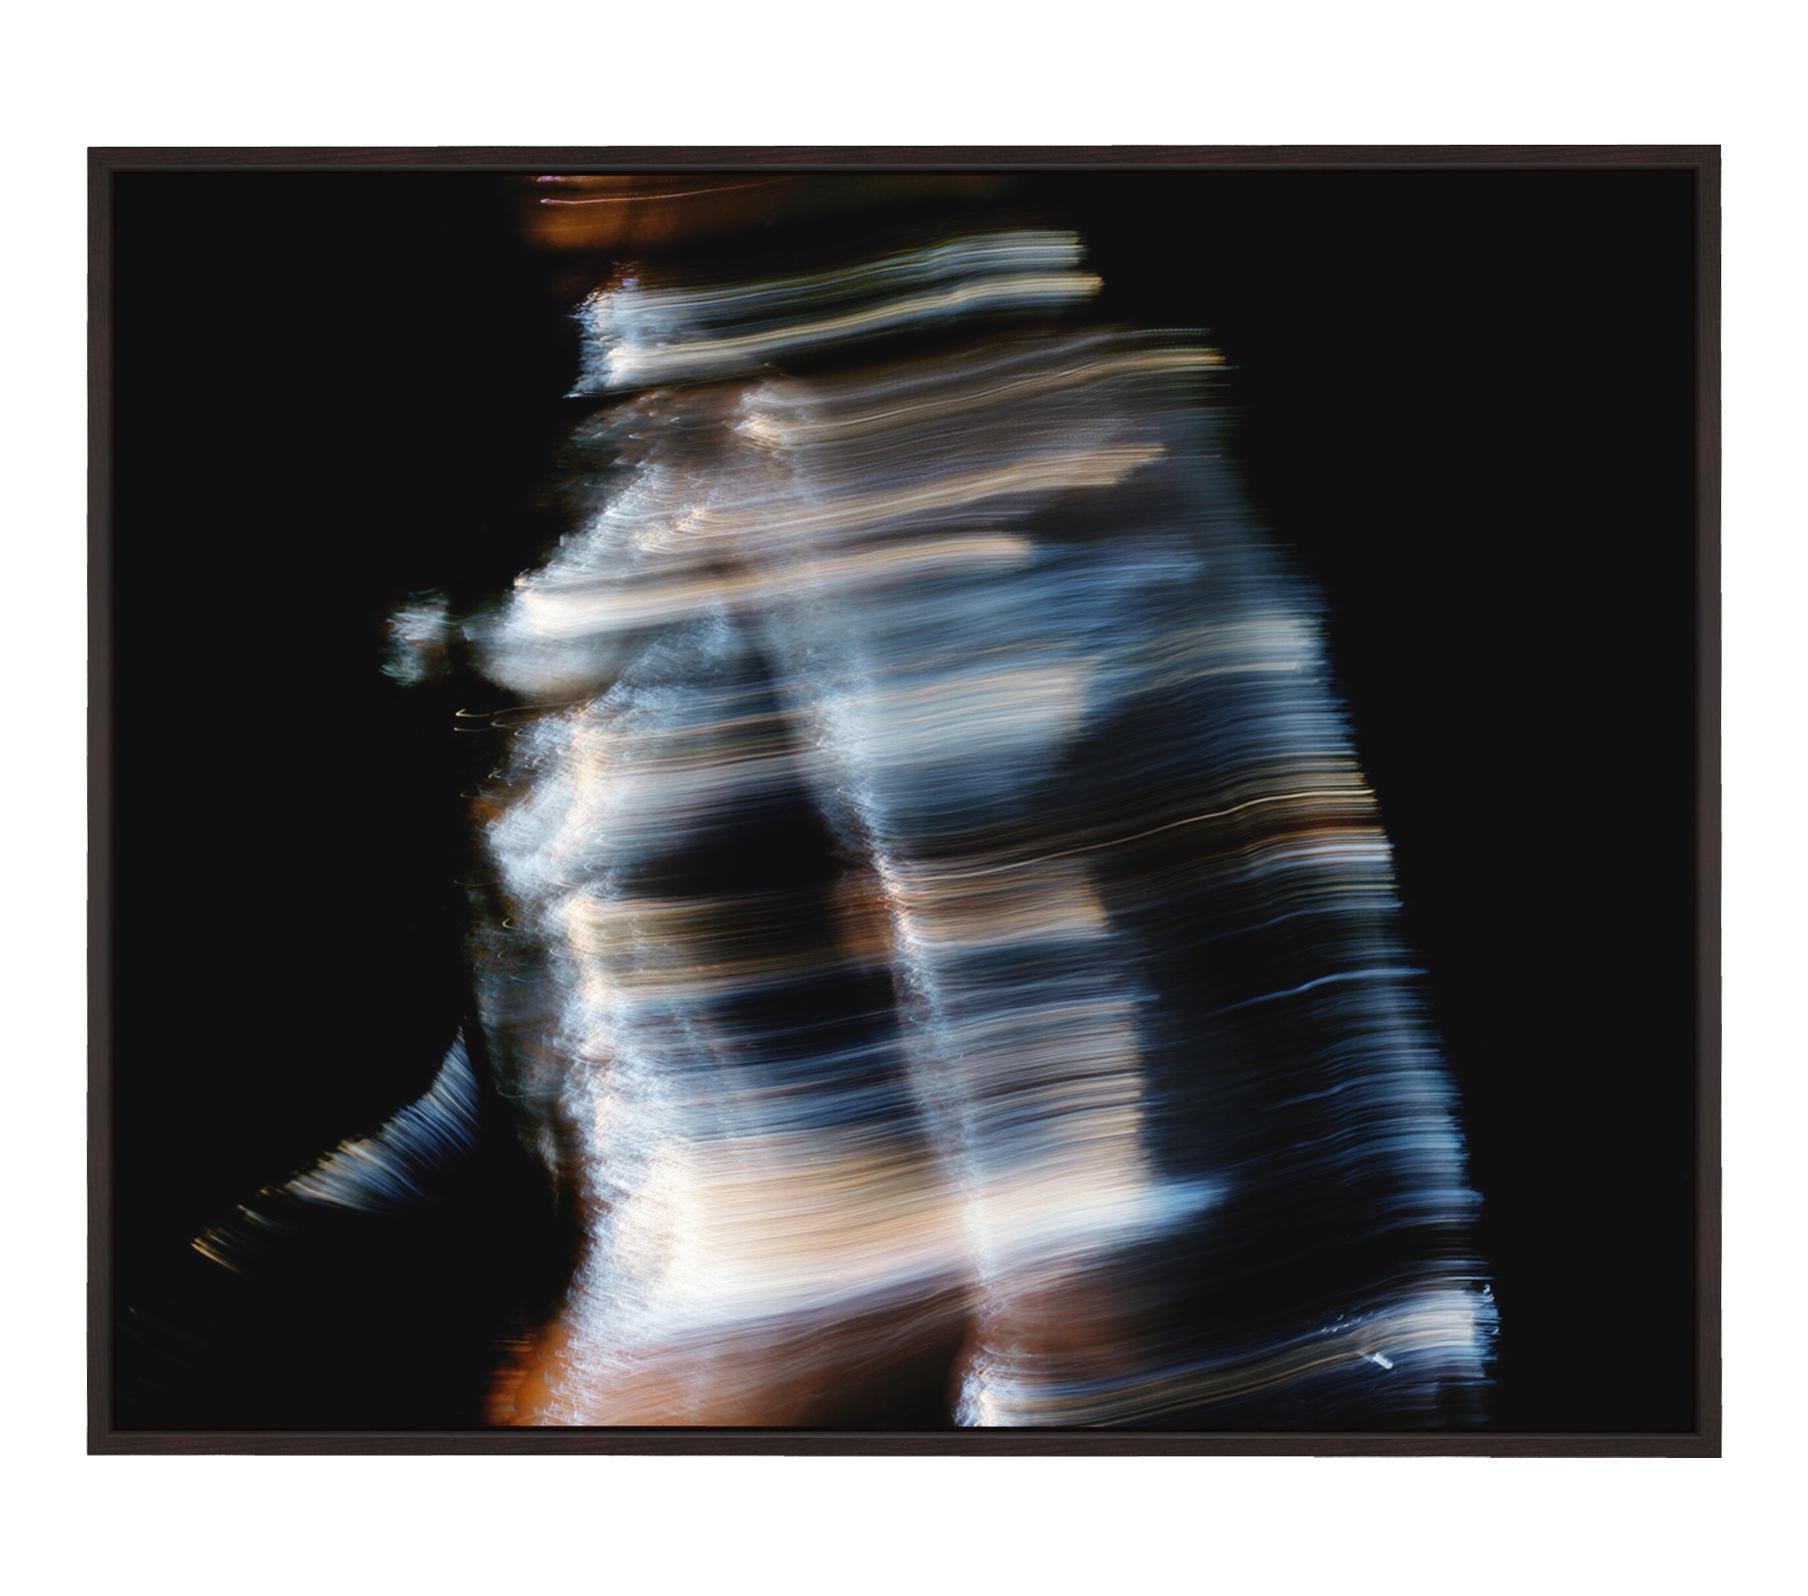 Laufendes Mädchen im Weltraum – Abstrakt-expressionistische Kunstfotografie (Abstrakter Expressionismus), Photograph, von Roger Reist